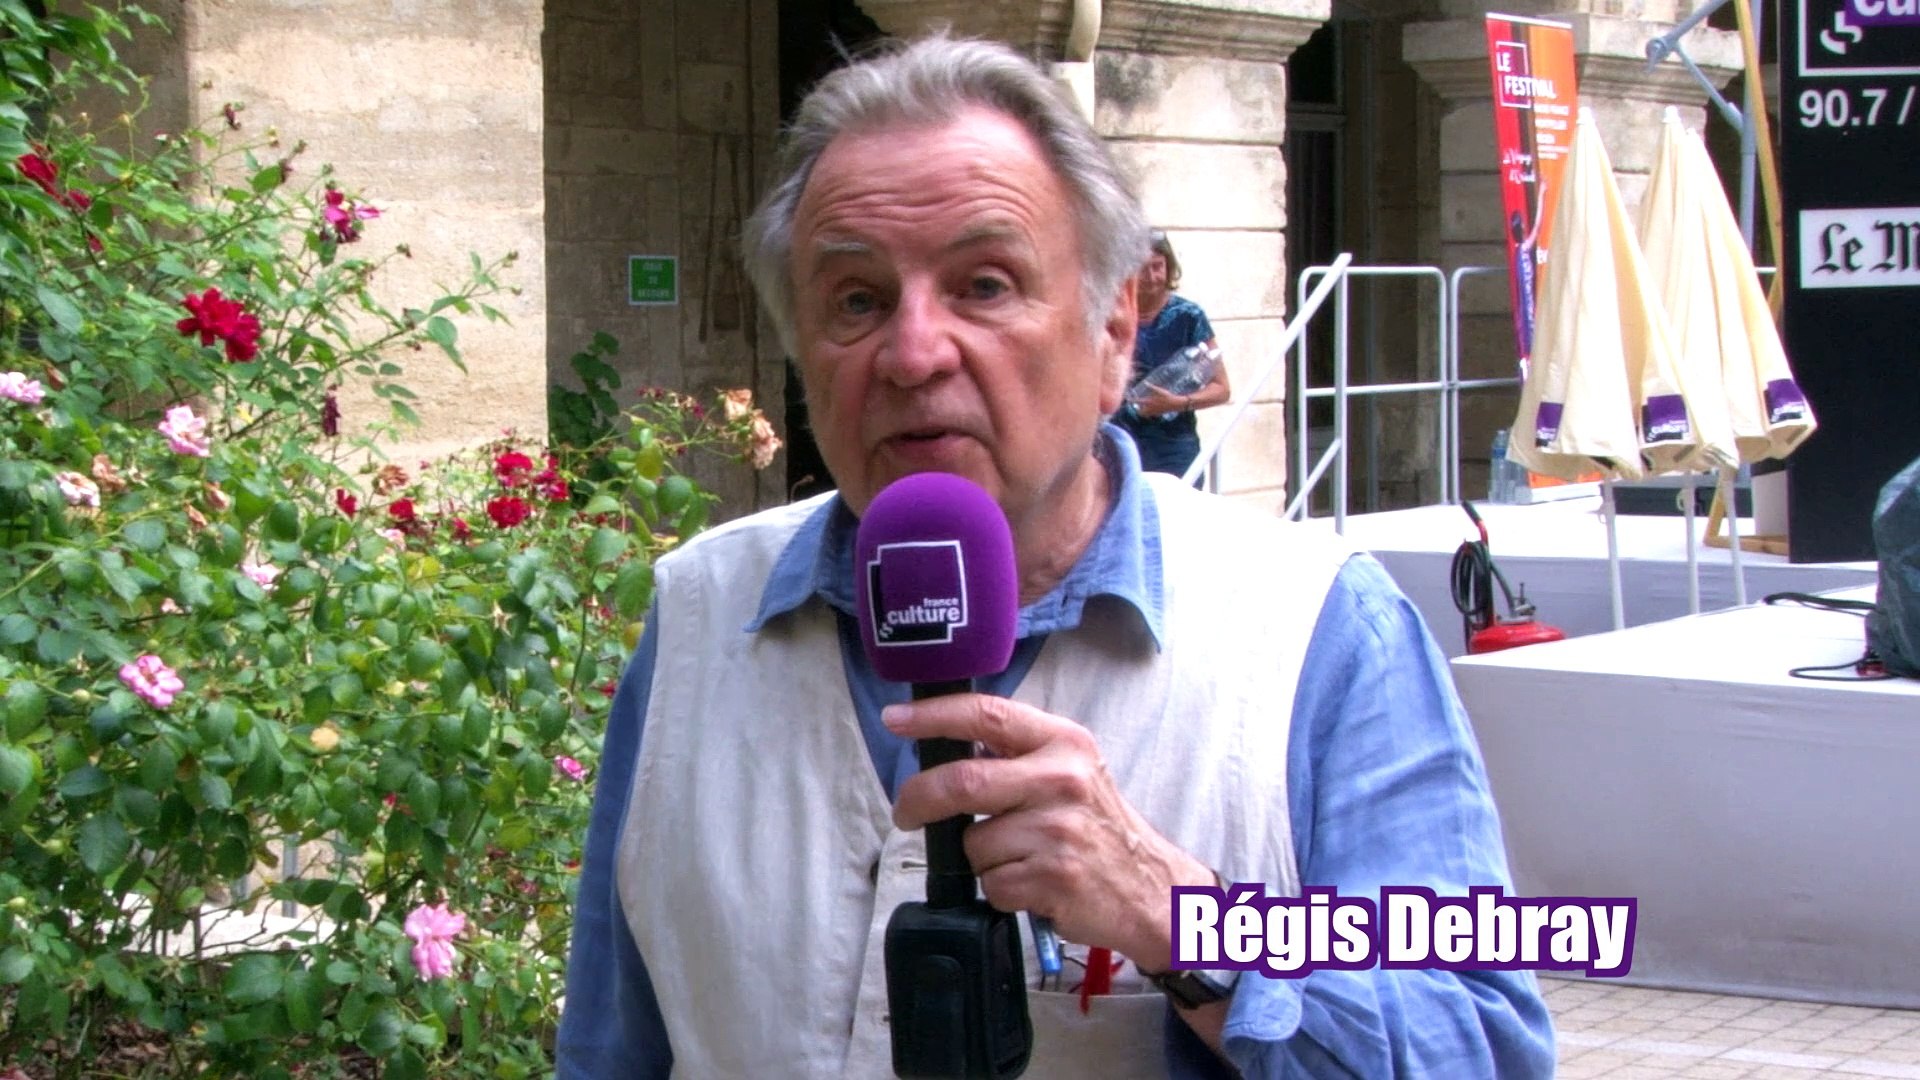 Régis Debray : " Le débat n'invente pas. Il rassure, il conforte, parfois  il inquiète." - Vidéo Dailymotion